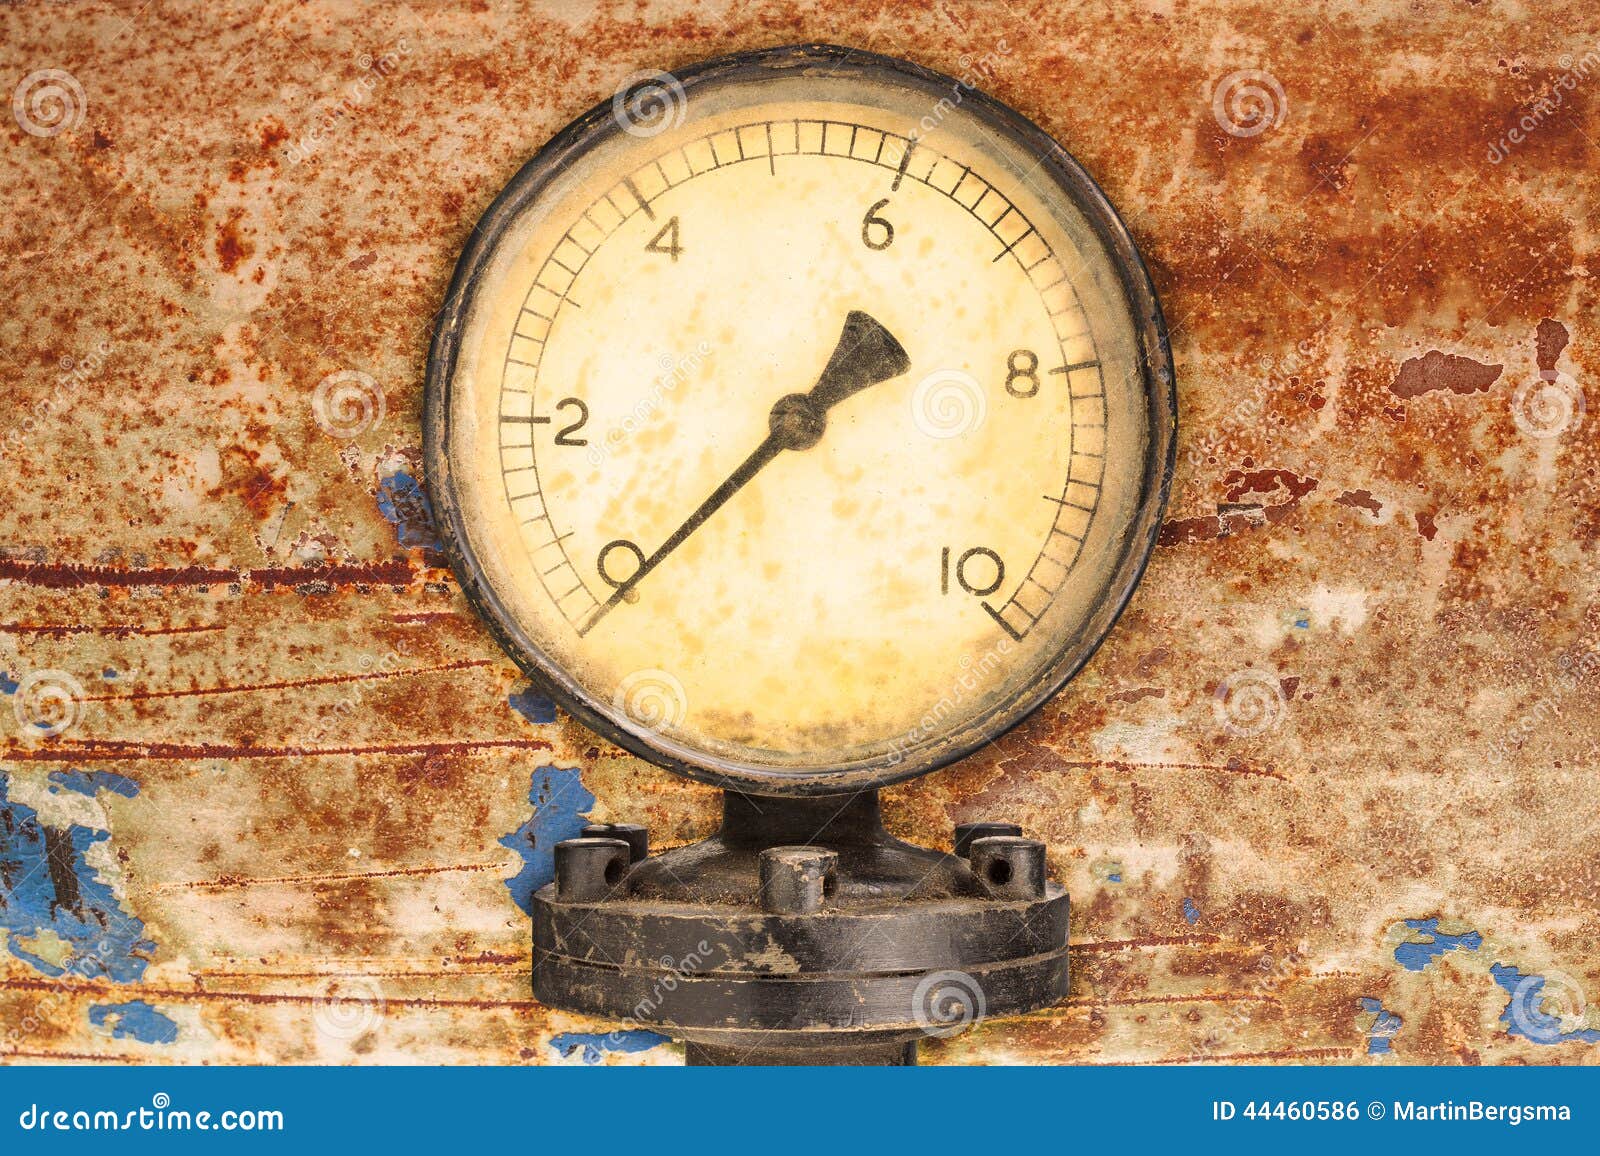 old industry display mano meter